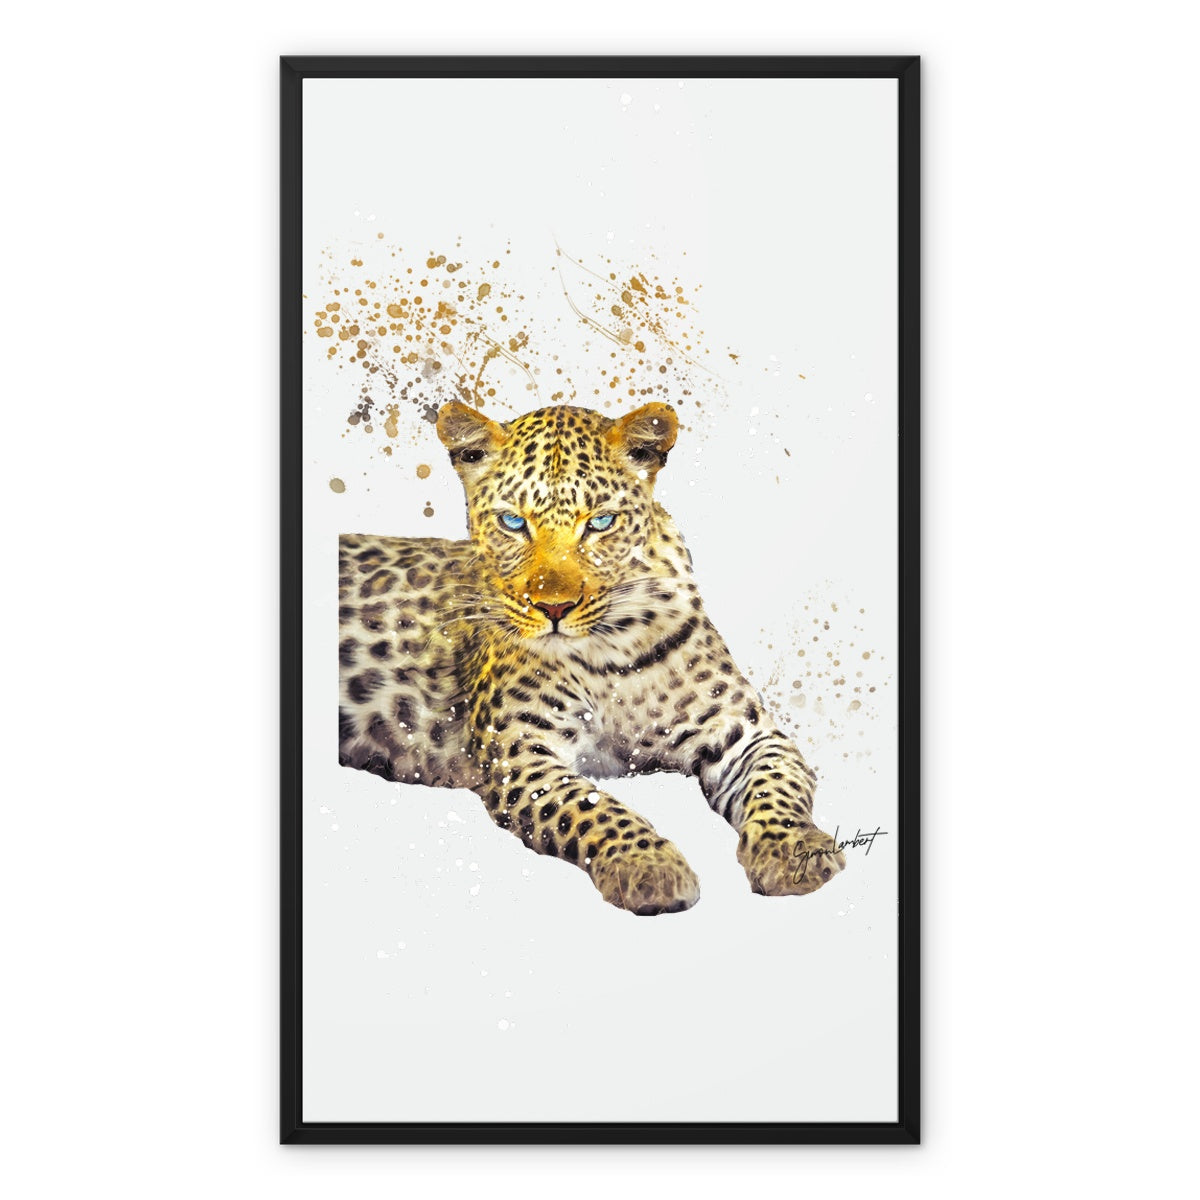 Leopard Splatter Brush Artwork Framed Canvas